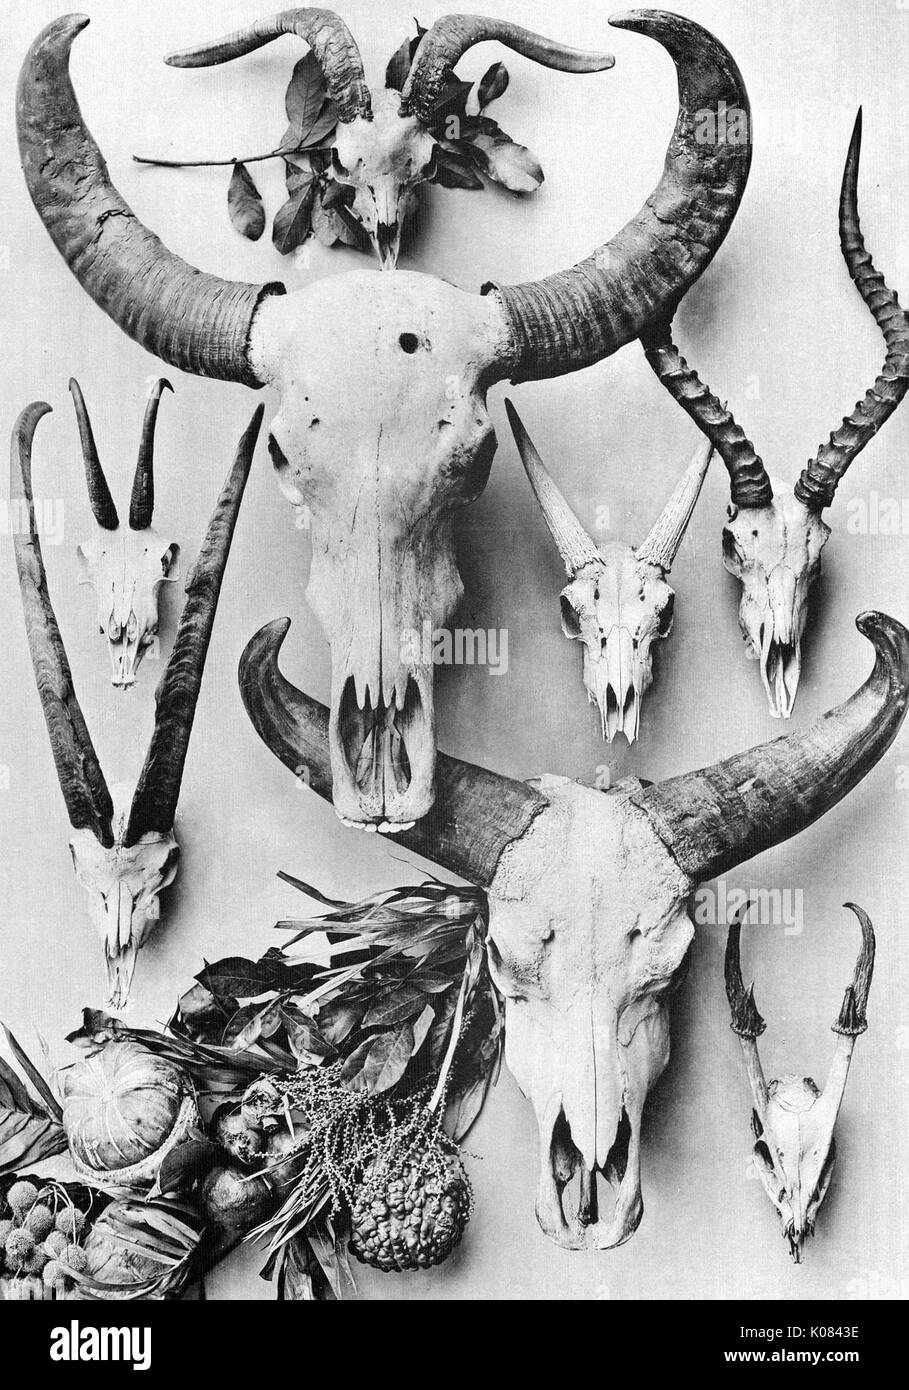 Huit crânes des animaux avec des cornes dans la conception, de diverses plantes décorées à côté de crânes d'animaux, 1900. Banque D'Images